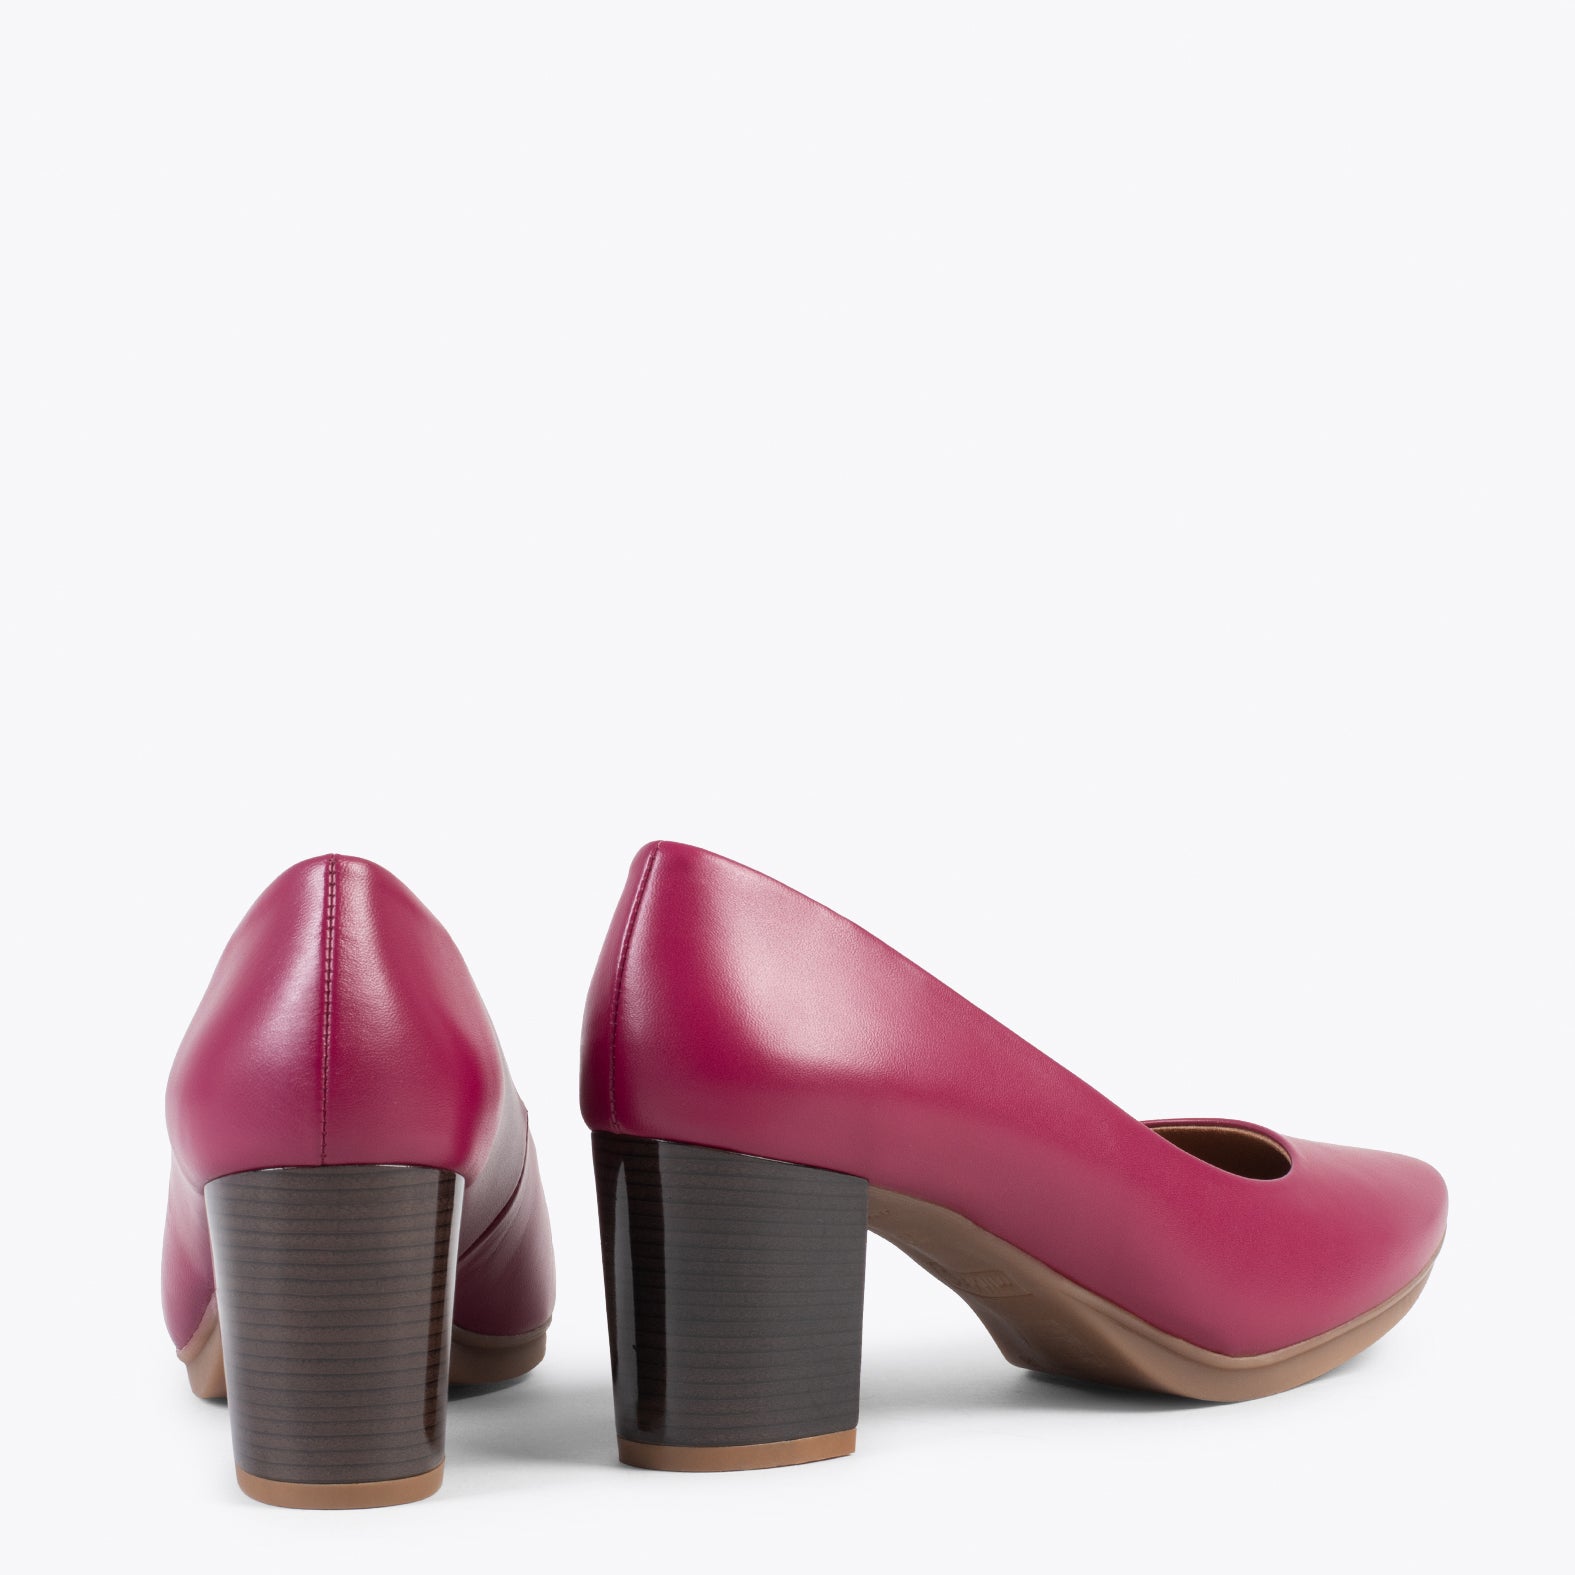 URBAN S SALON – Zapatos de tacón medio de napa BURDEOS